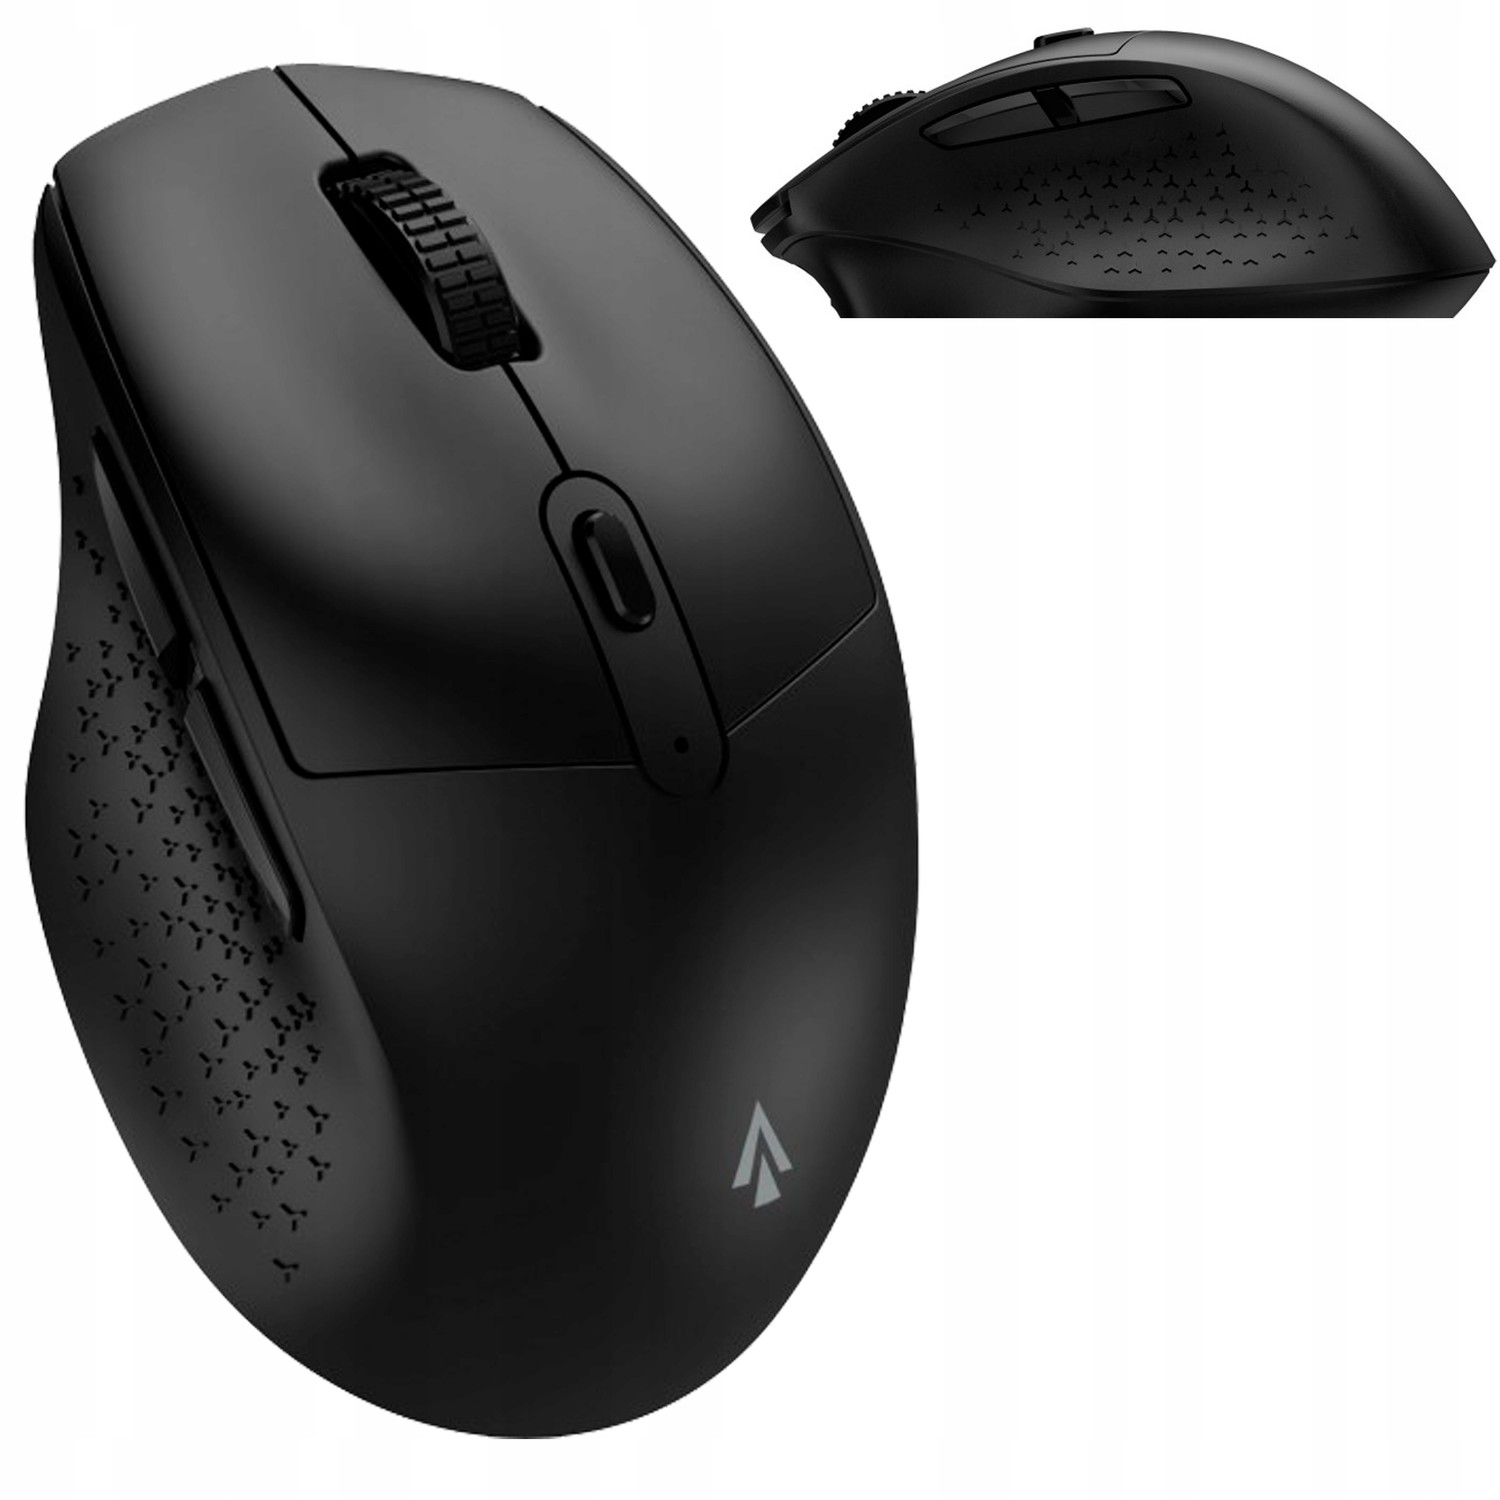 Jedna Myš dva Počítače Bluetooth myš Accura pro notebook/smartphone atd.